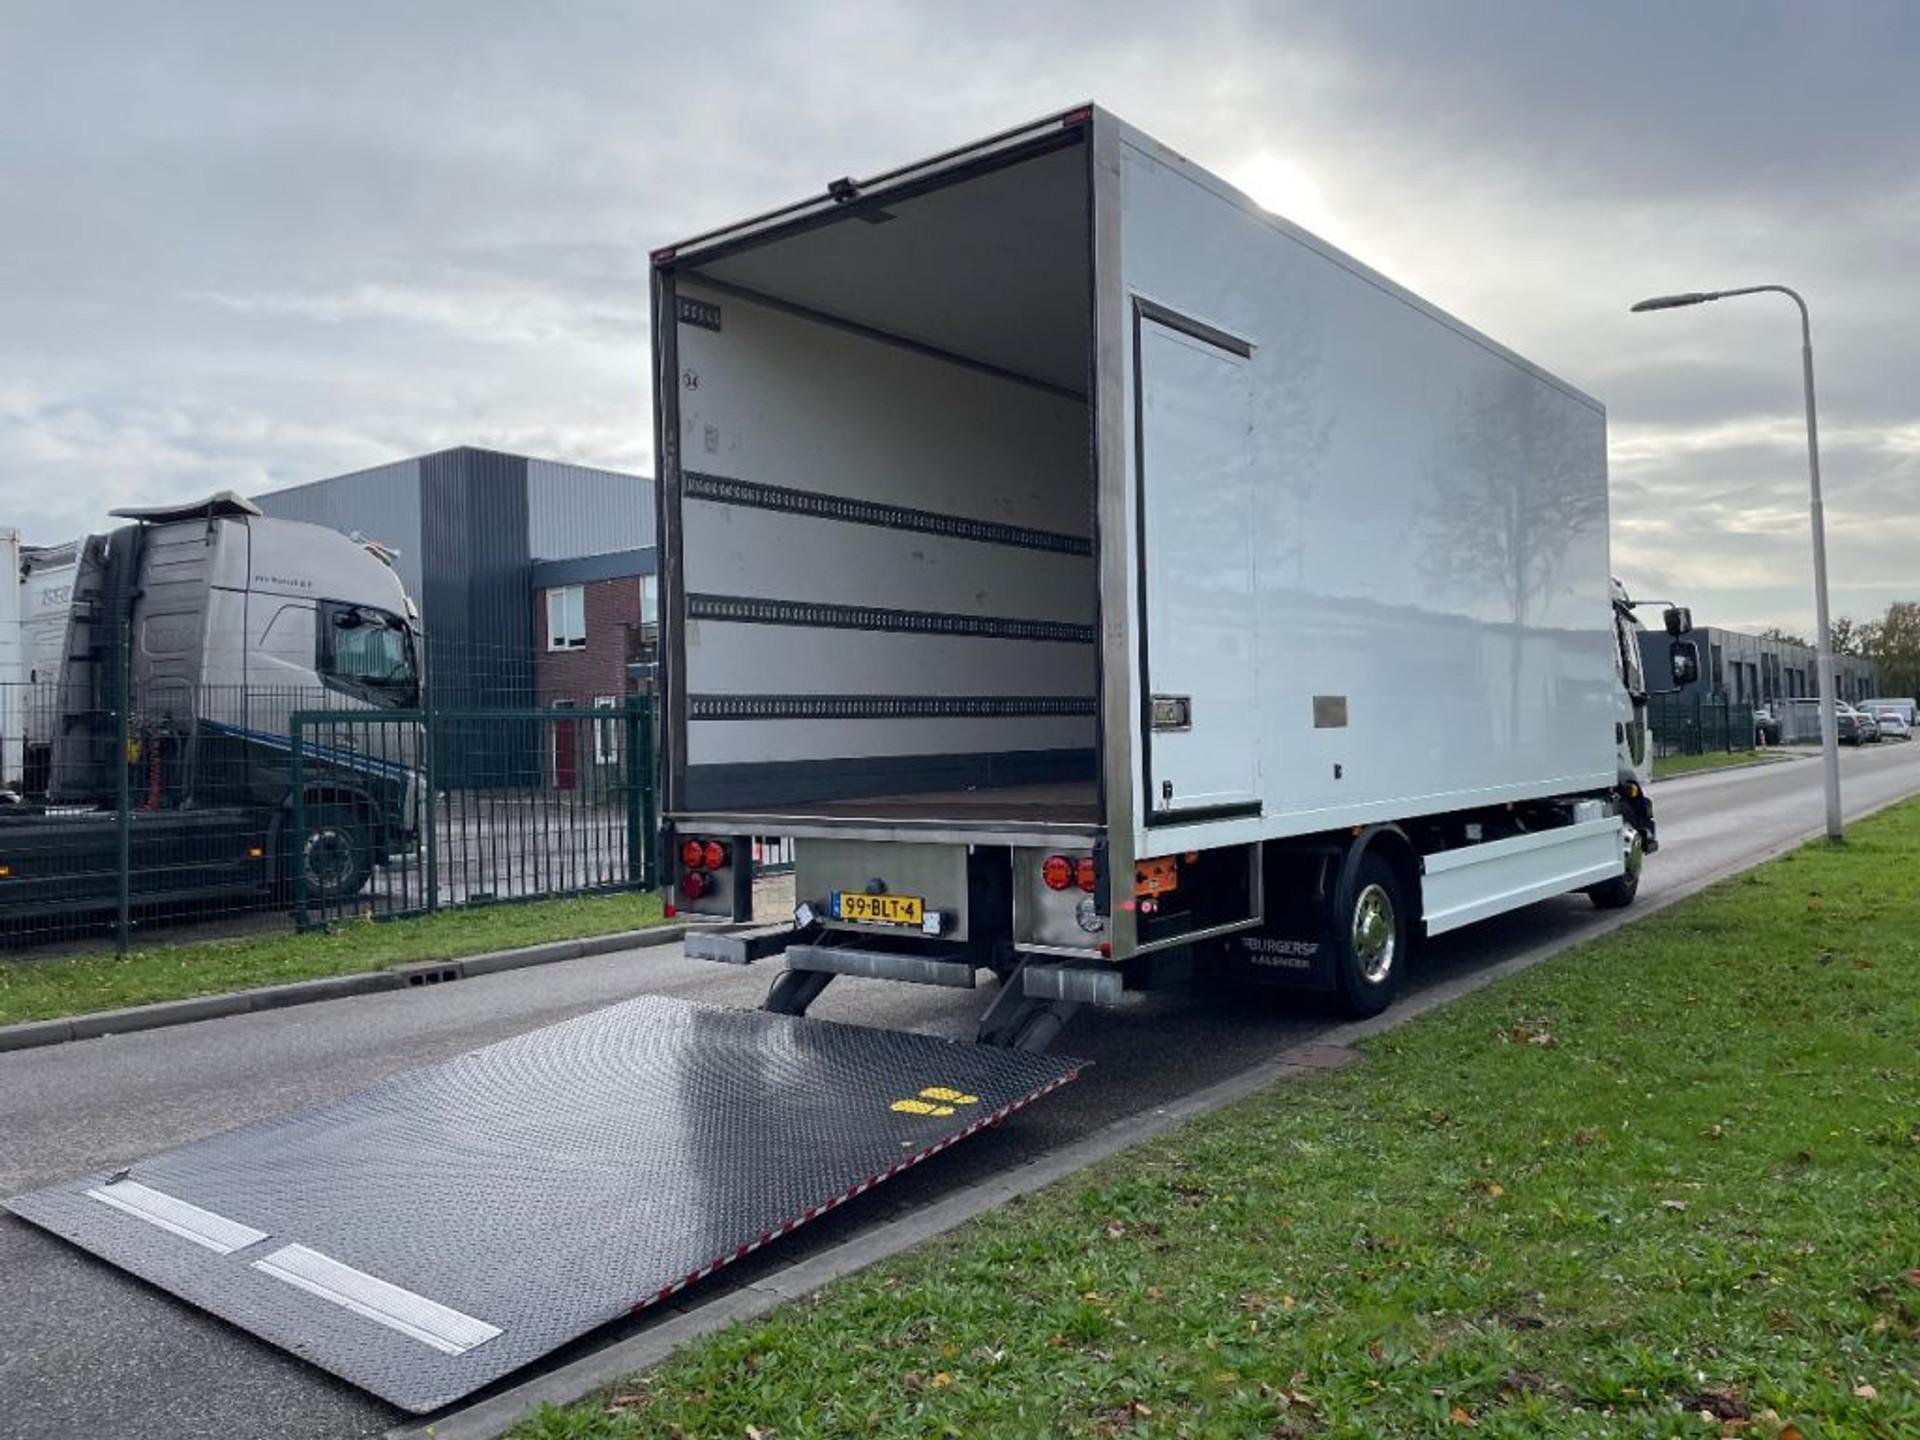 Foto 25 van Volvo FL verhuiswagen 2019 only 133.000 km